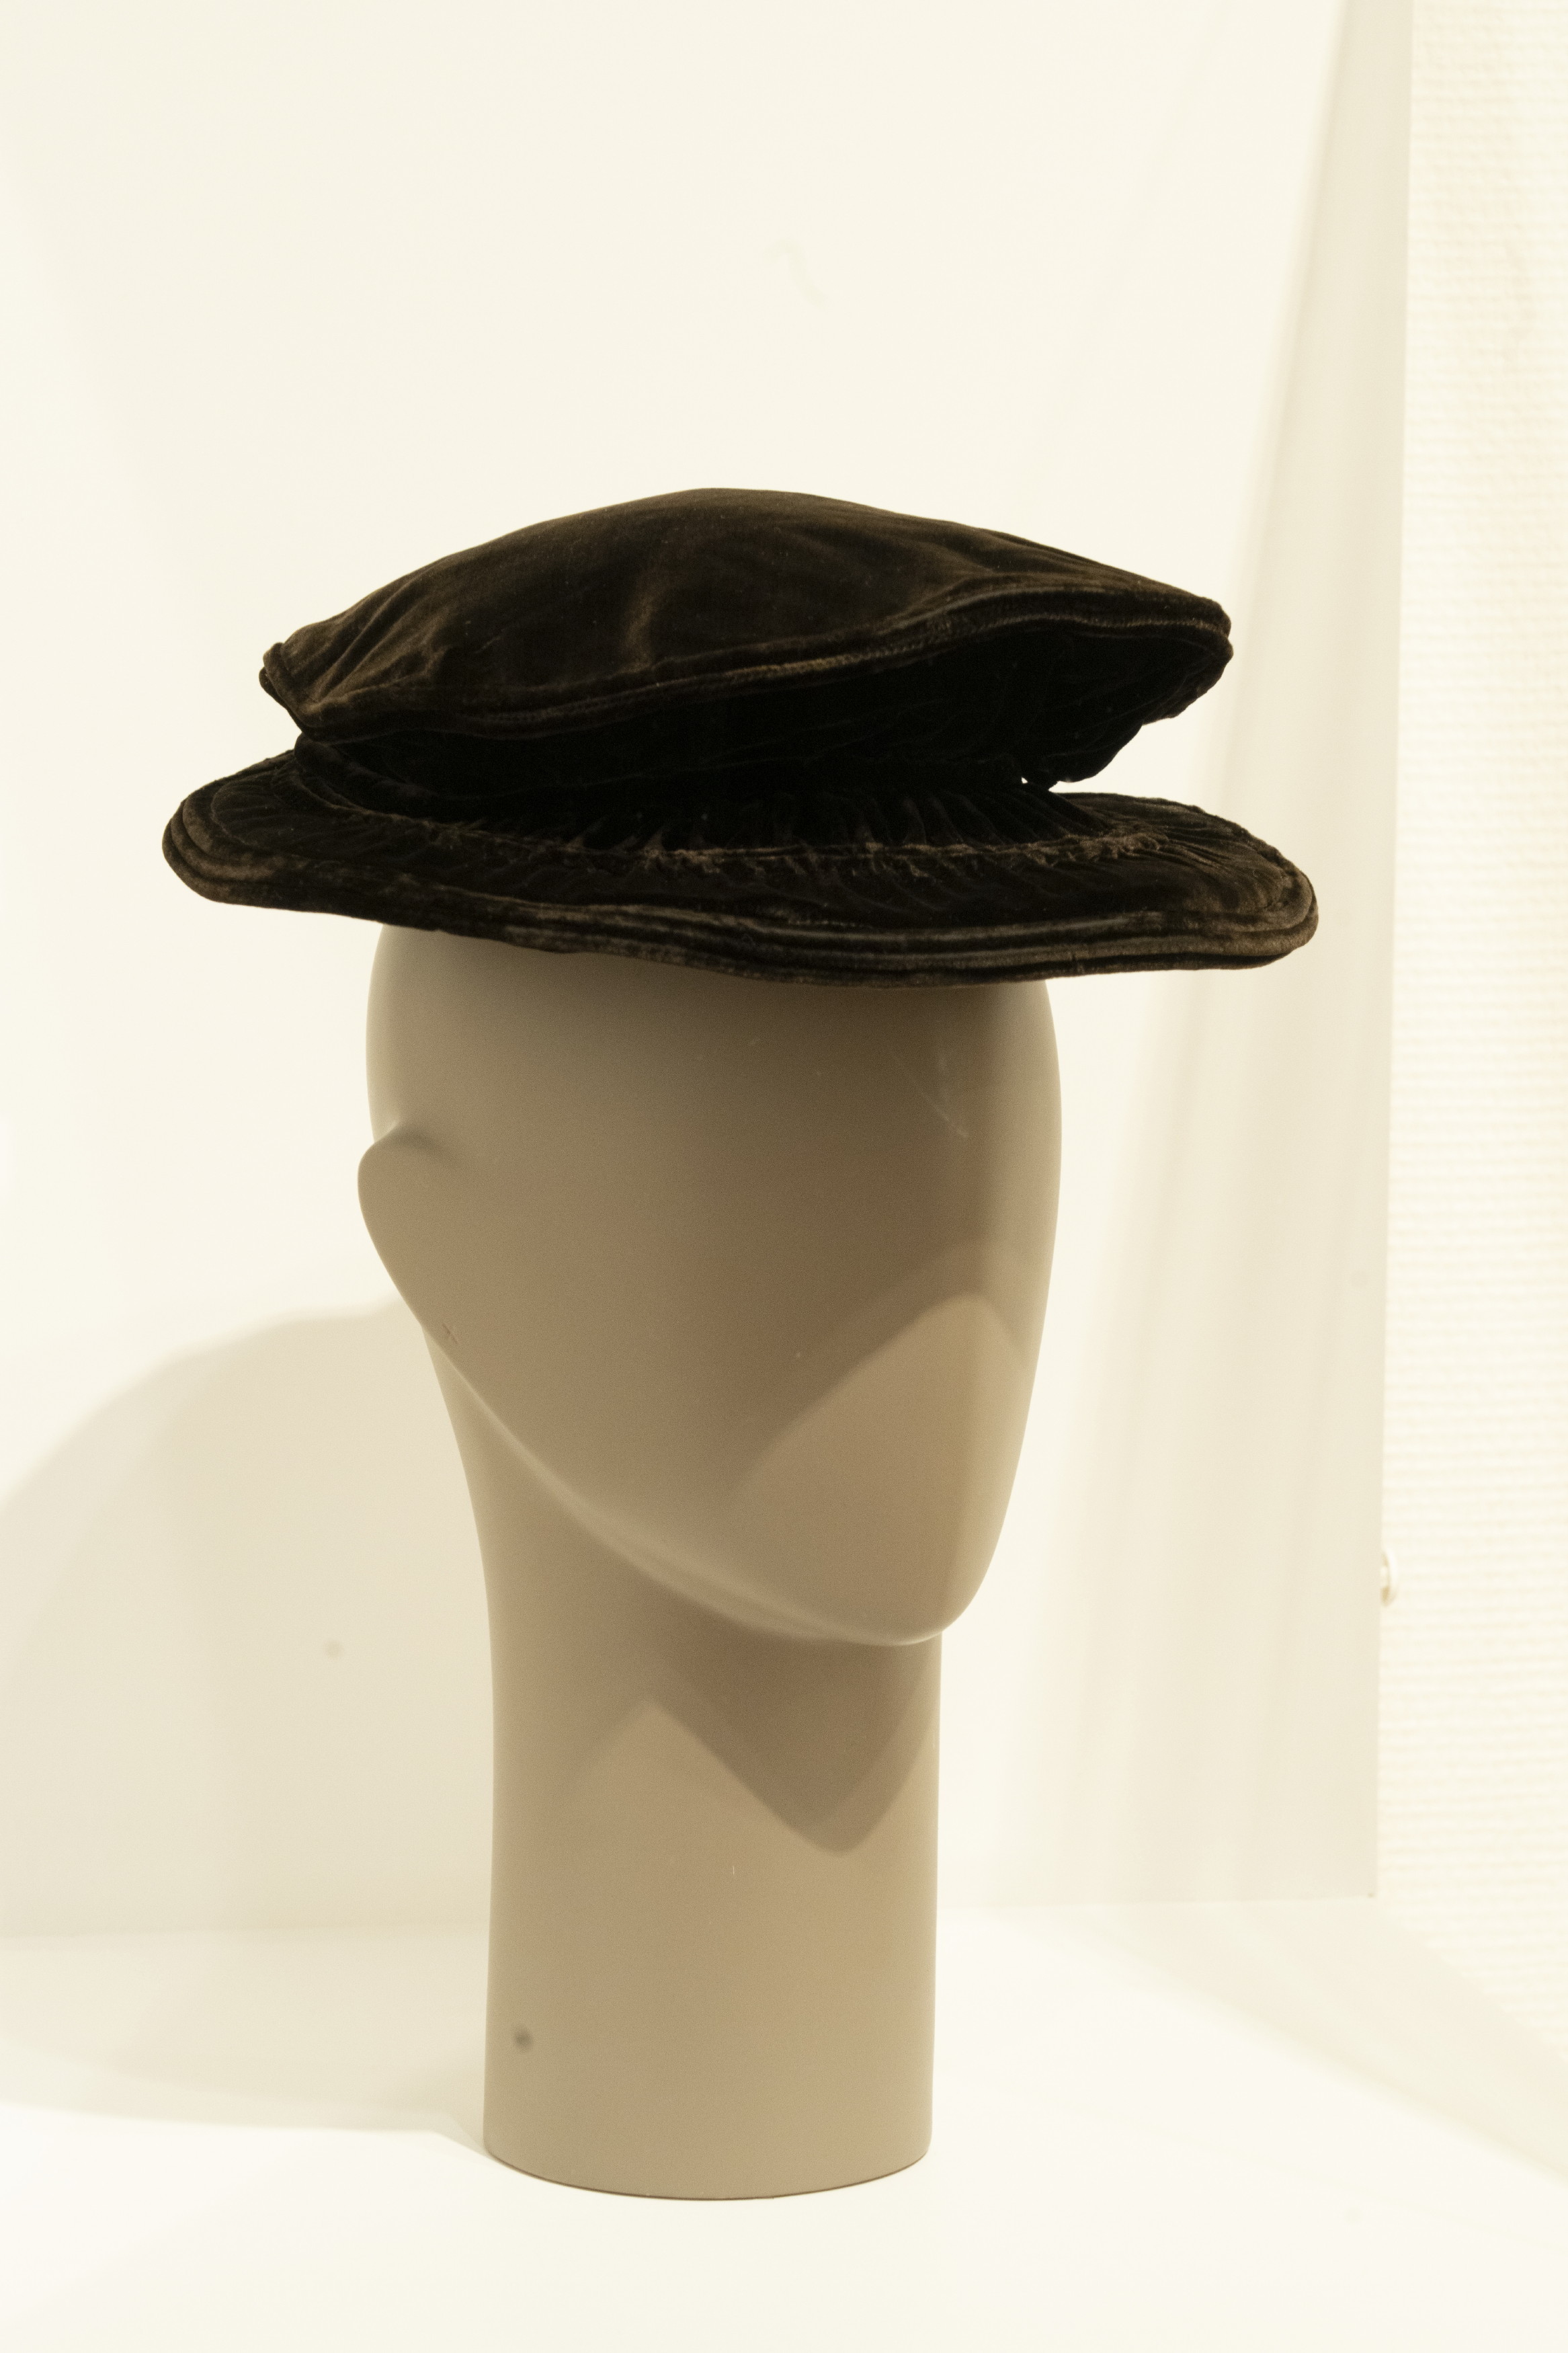 ガブリエル・シャネル「帽子」1910年代 シルクベルベット 神戸ファッション美術館